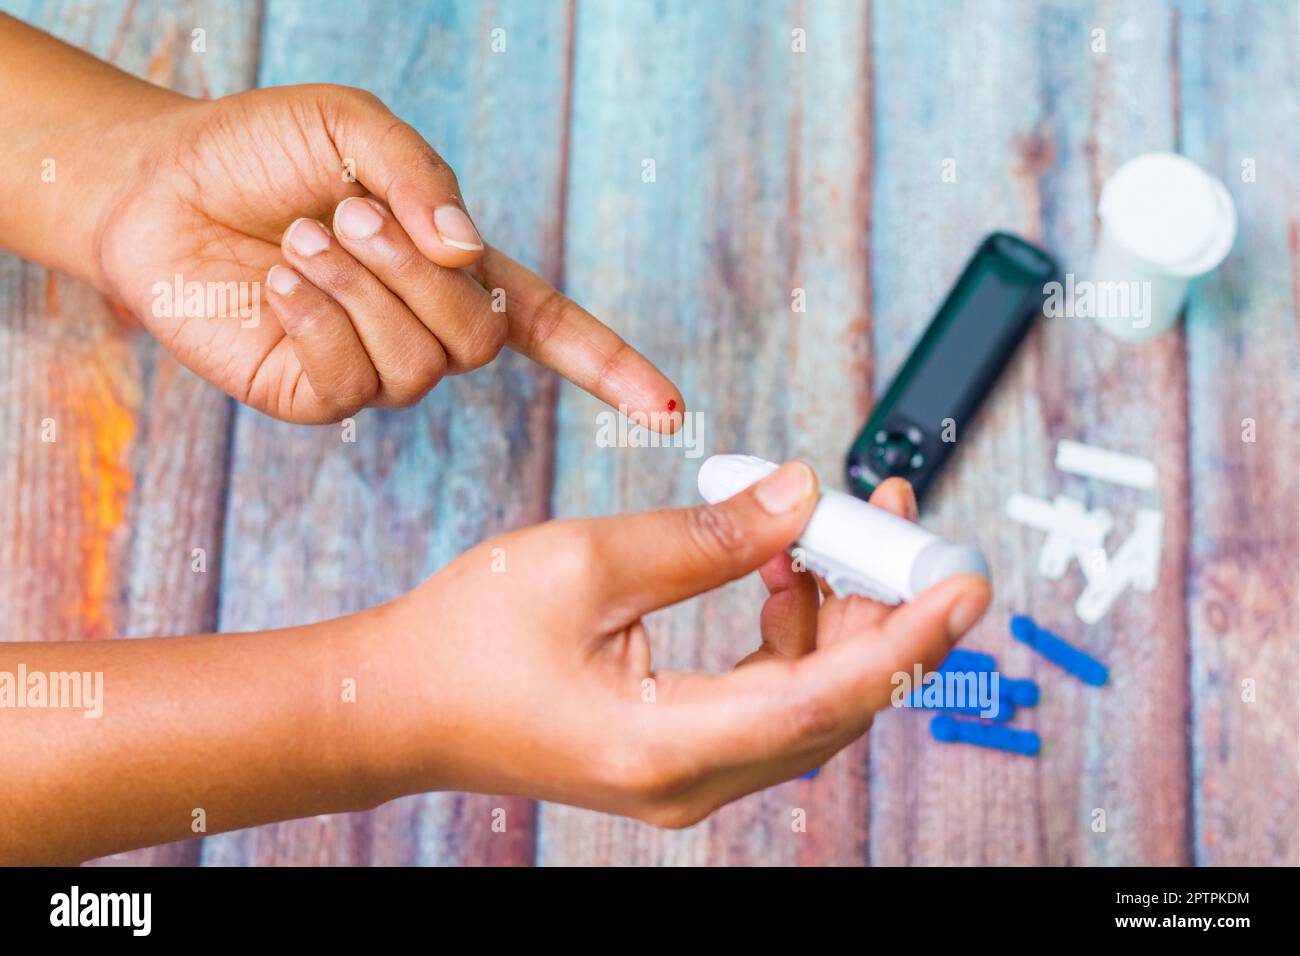 un patient diabétique mesurant le taux de sucre dans le sang à l'aide d'un dispositif. Banque D'Images